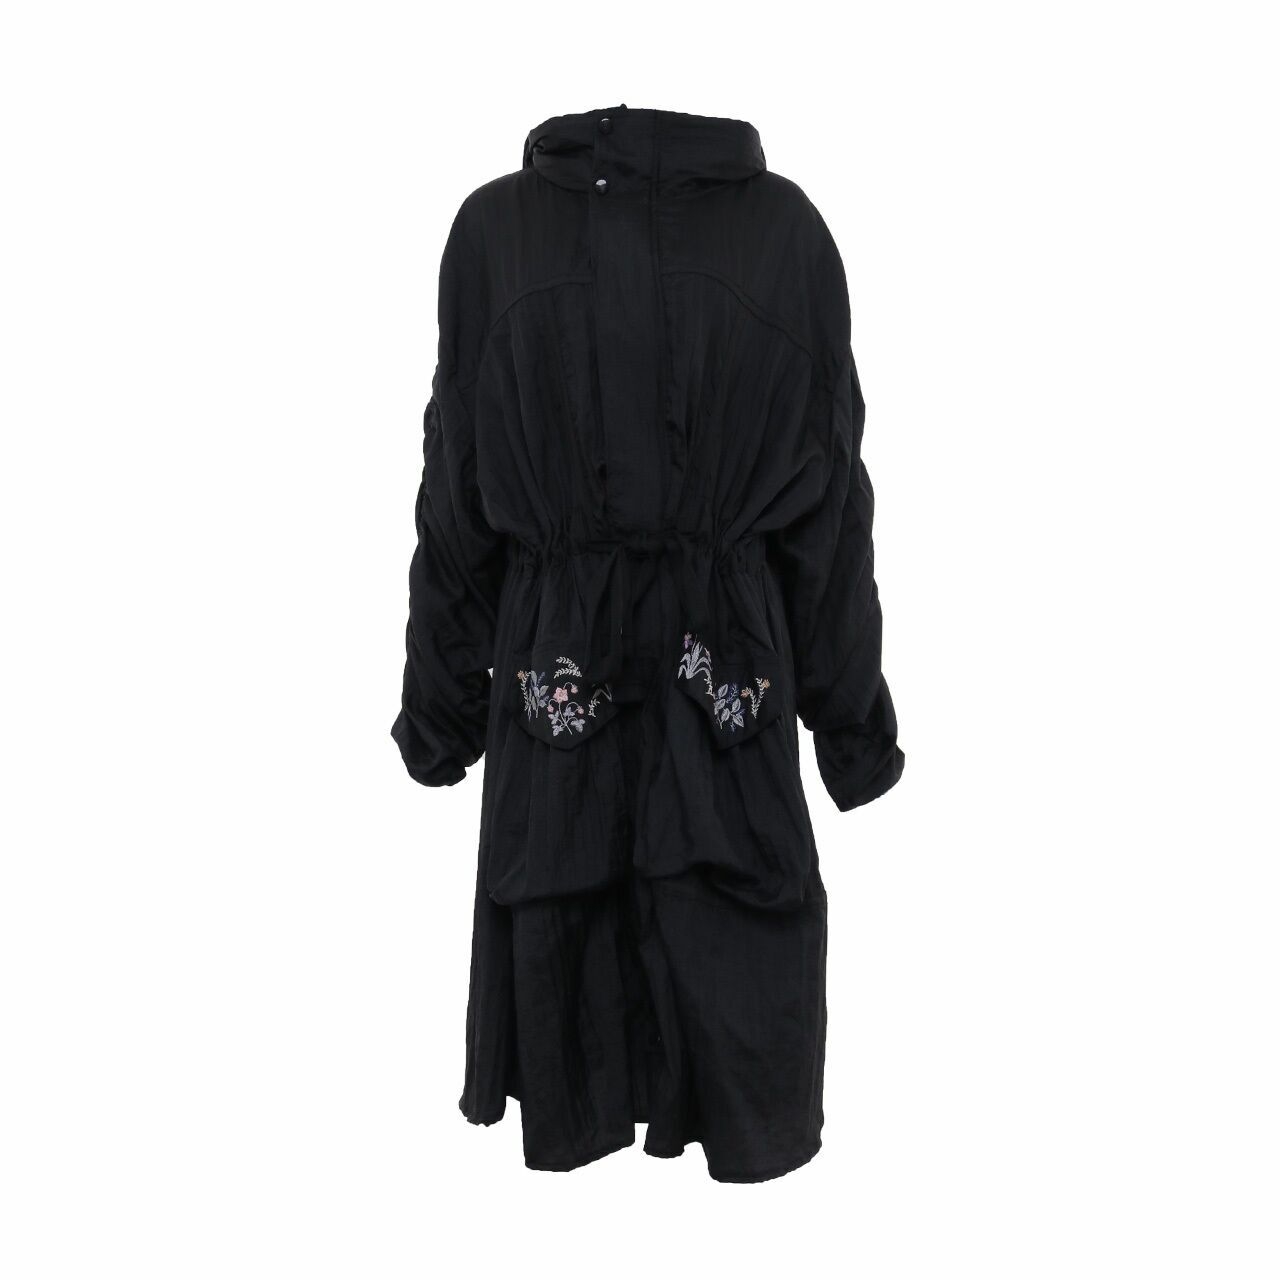 Pvra Black Coat